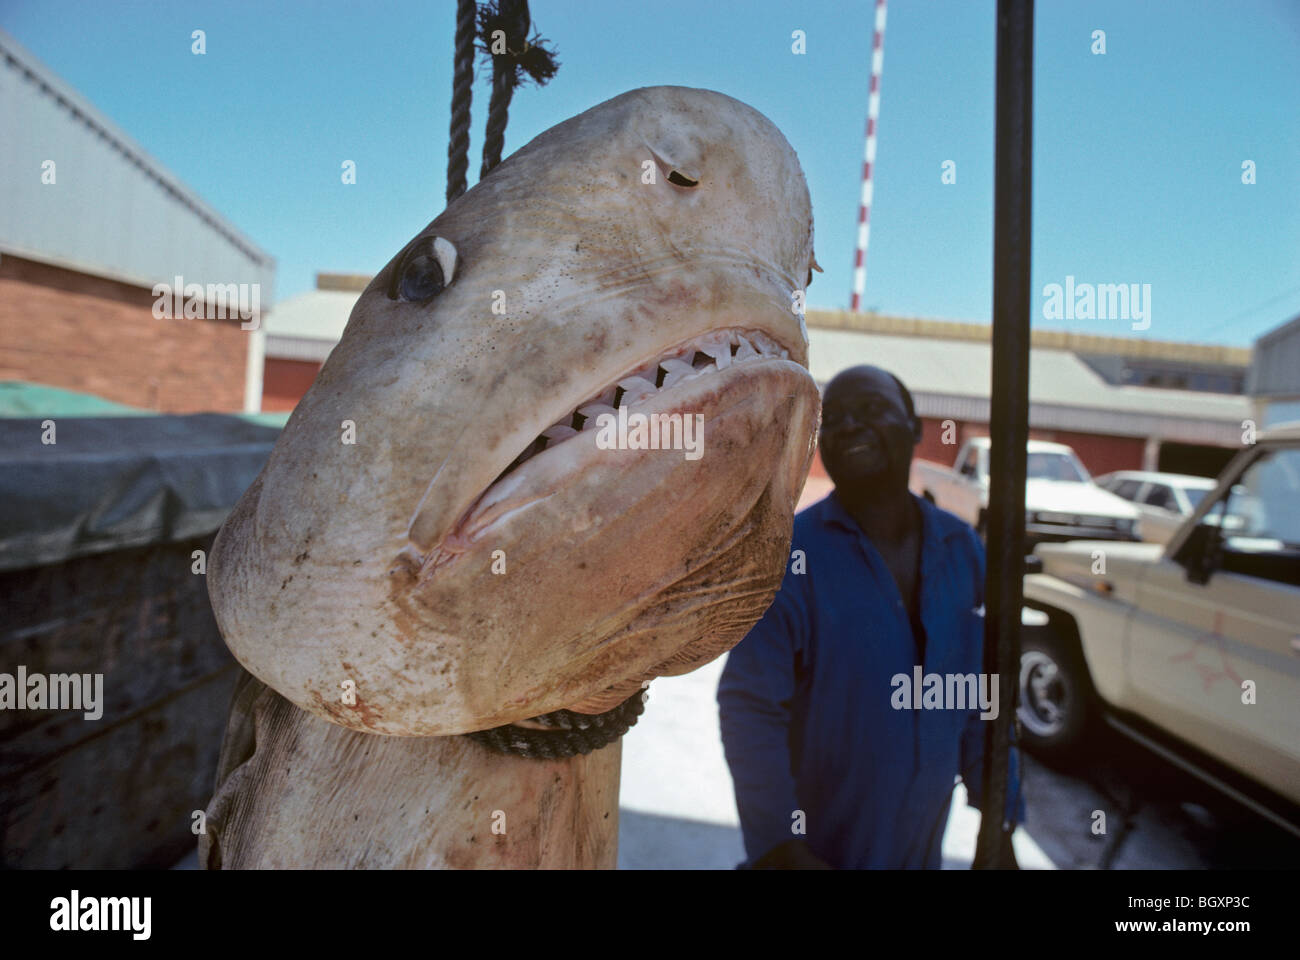 3 mètre de requin tigre (Galeocerdo cuvier) pendaison avant de préparer la dissection. Natal Sharks Board - Durban, Afrique du Sud Banque D'Images